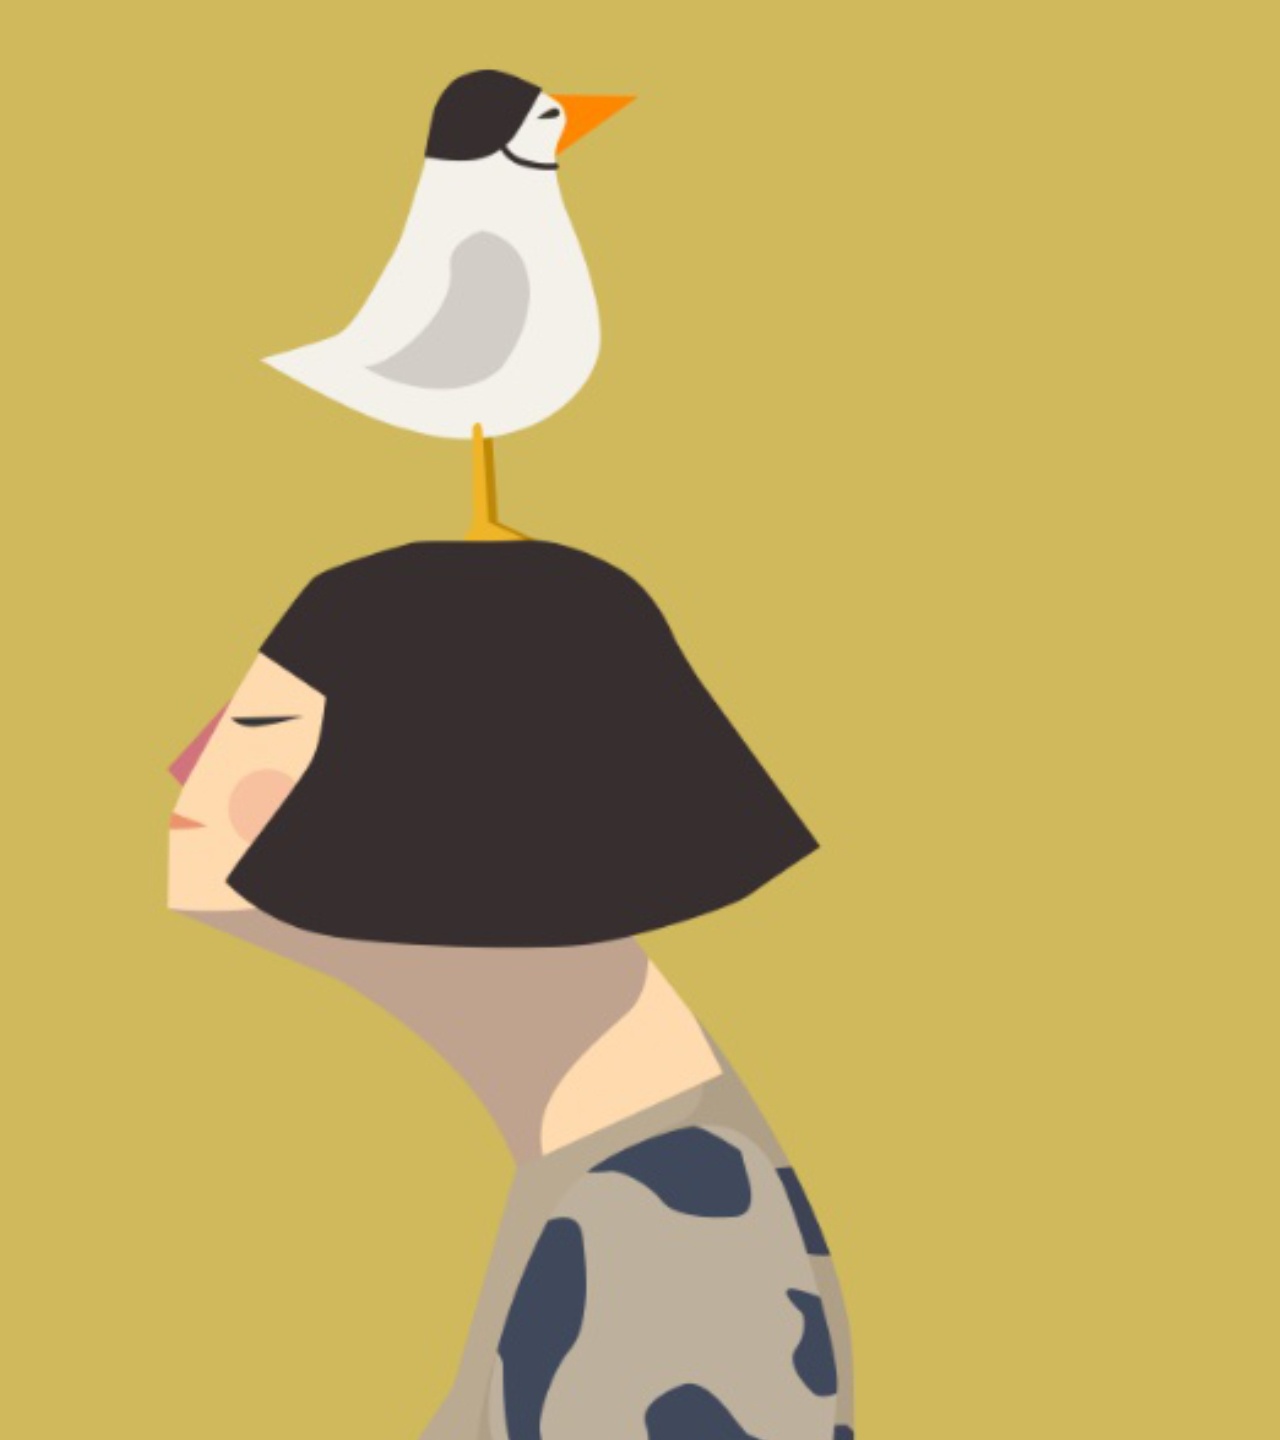 profilo di una donna con i capelli a caschetto e un gabbiano, suo compagno di avventure, sopra la testa